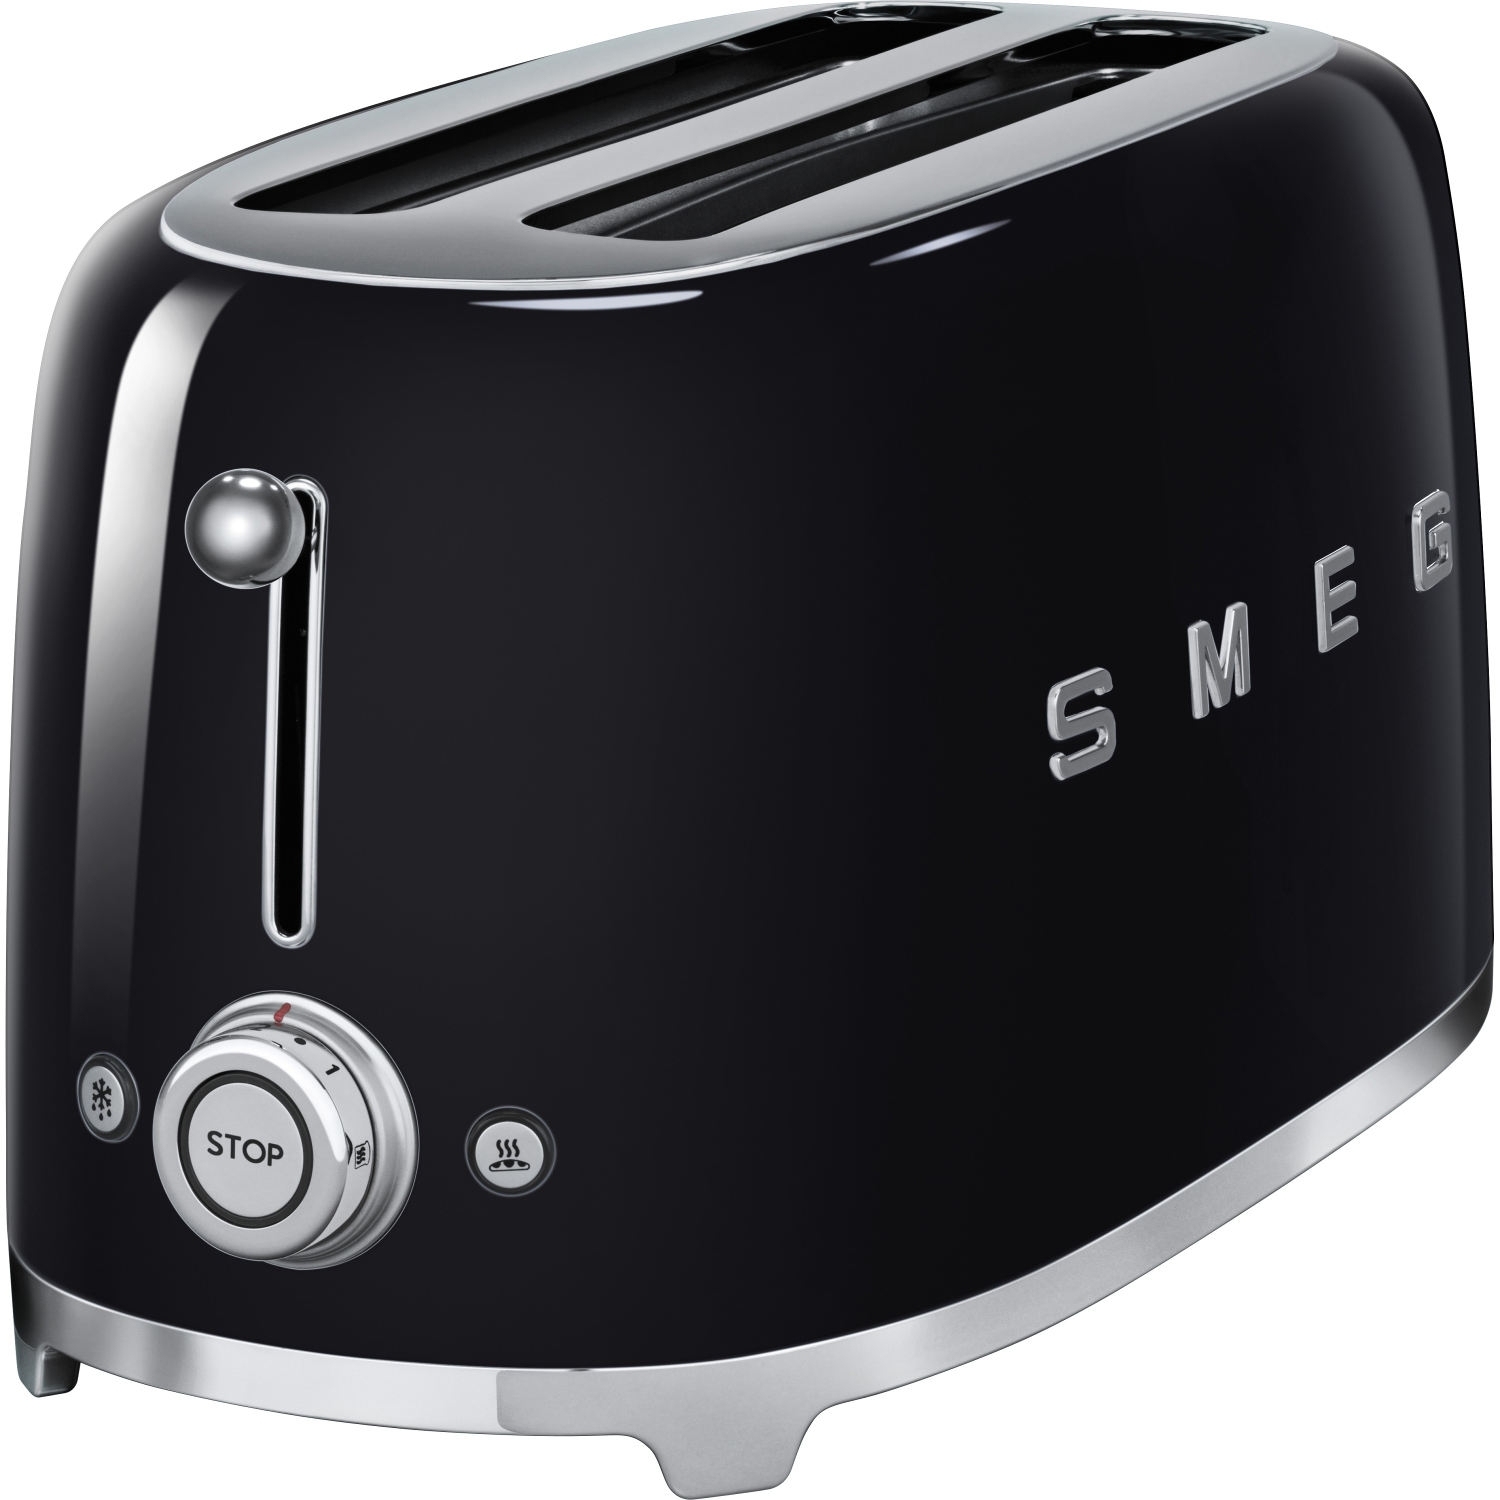 Smeg toaster 4 slot toasters